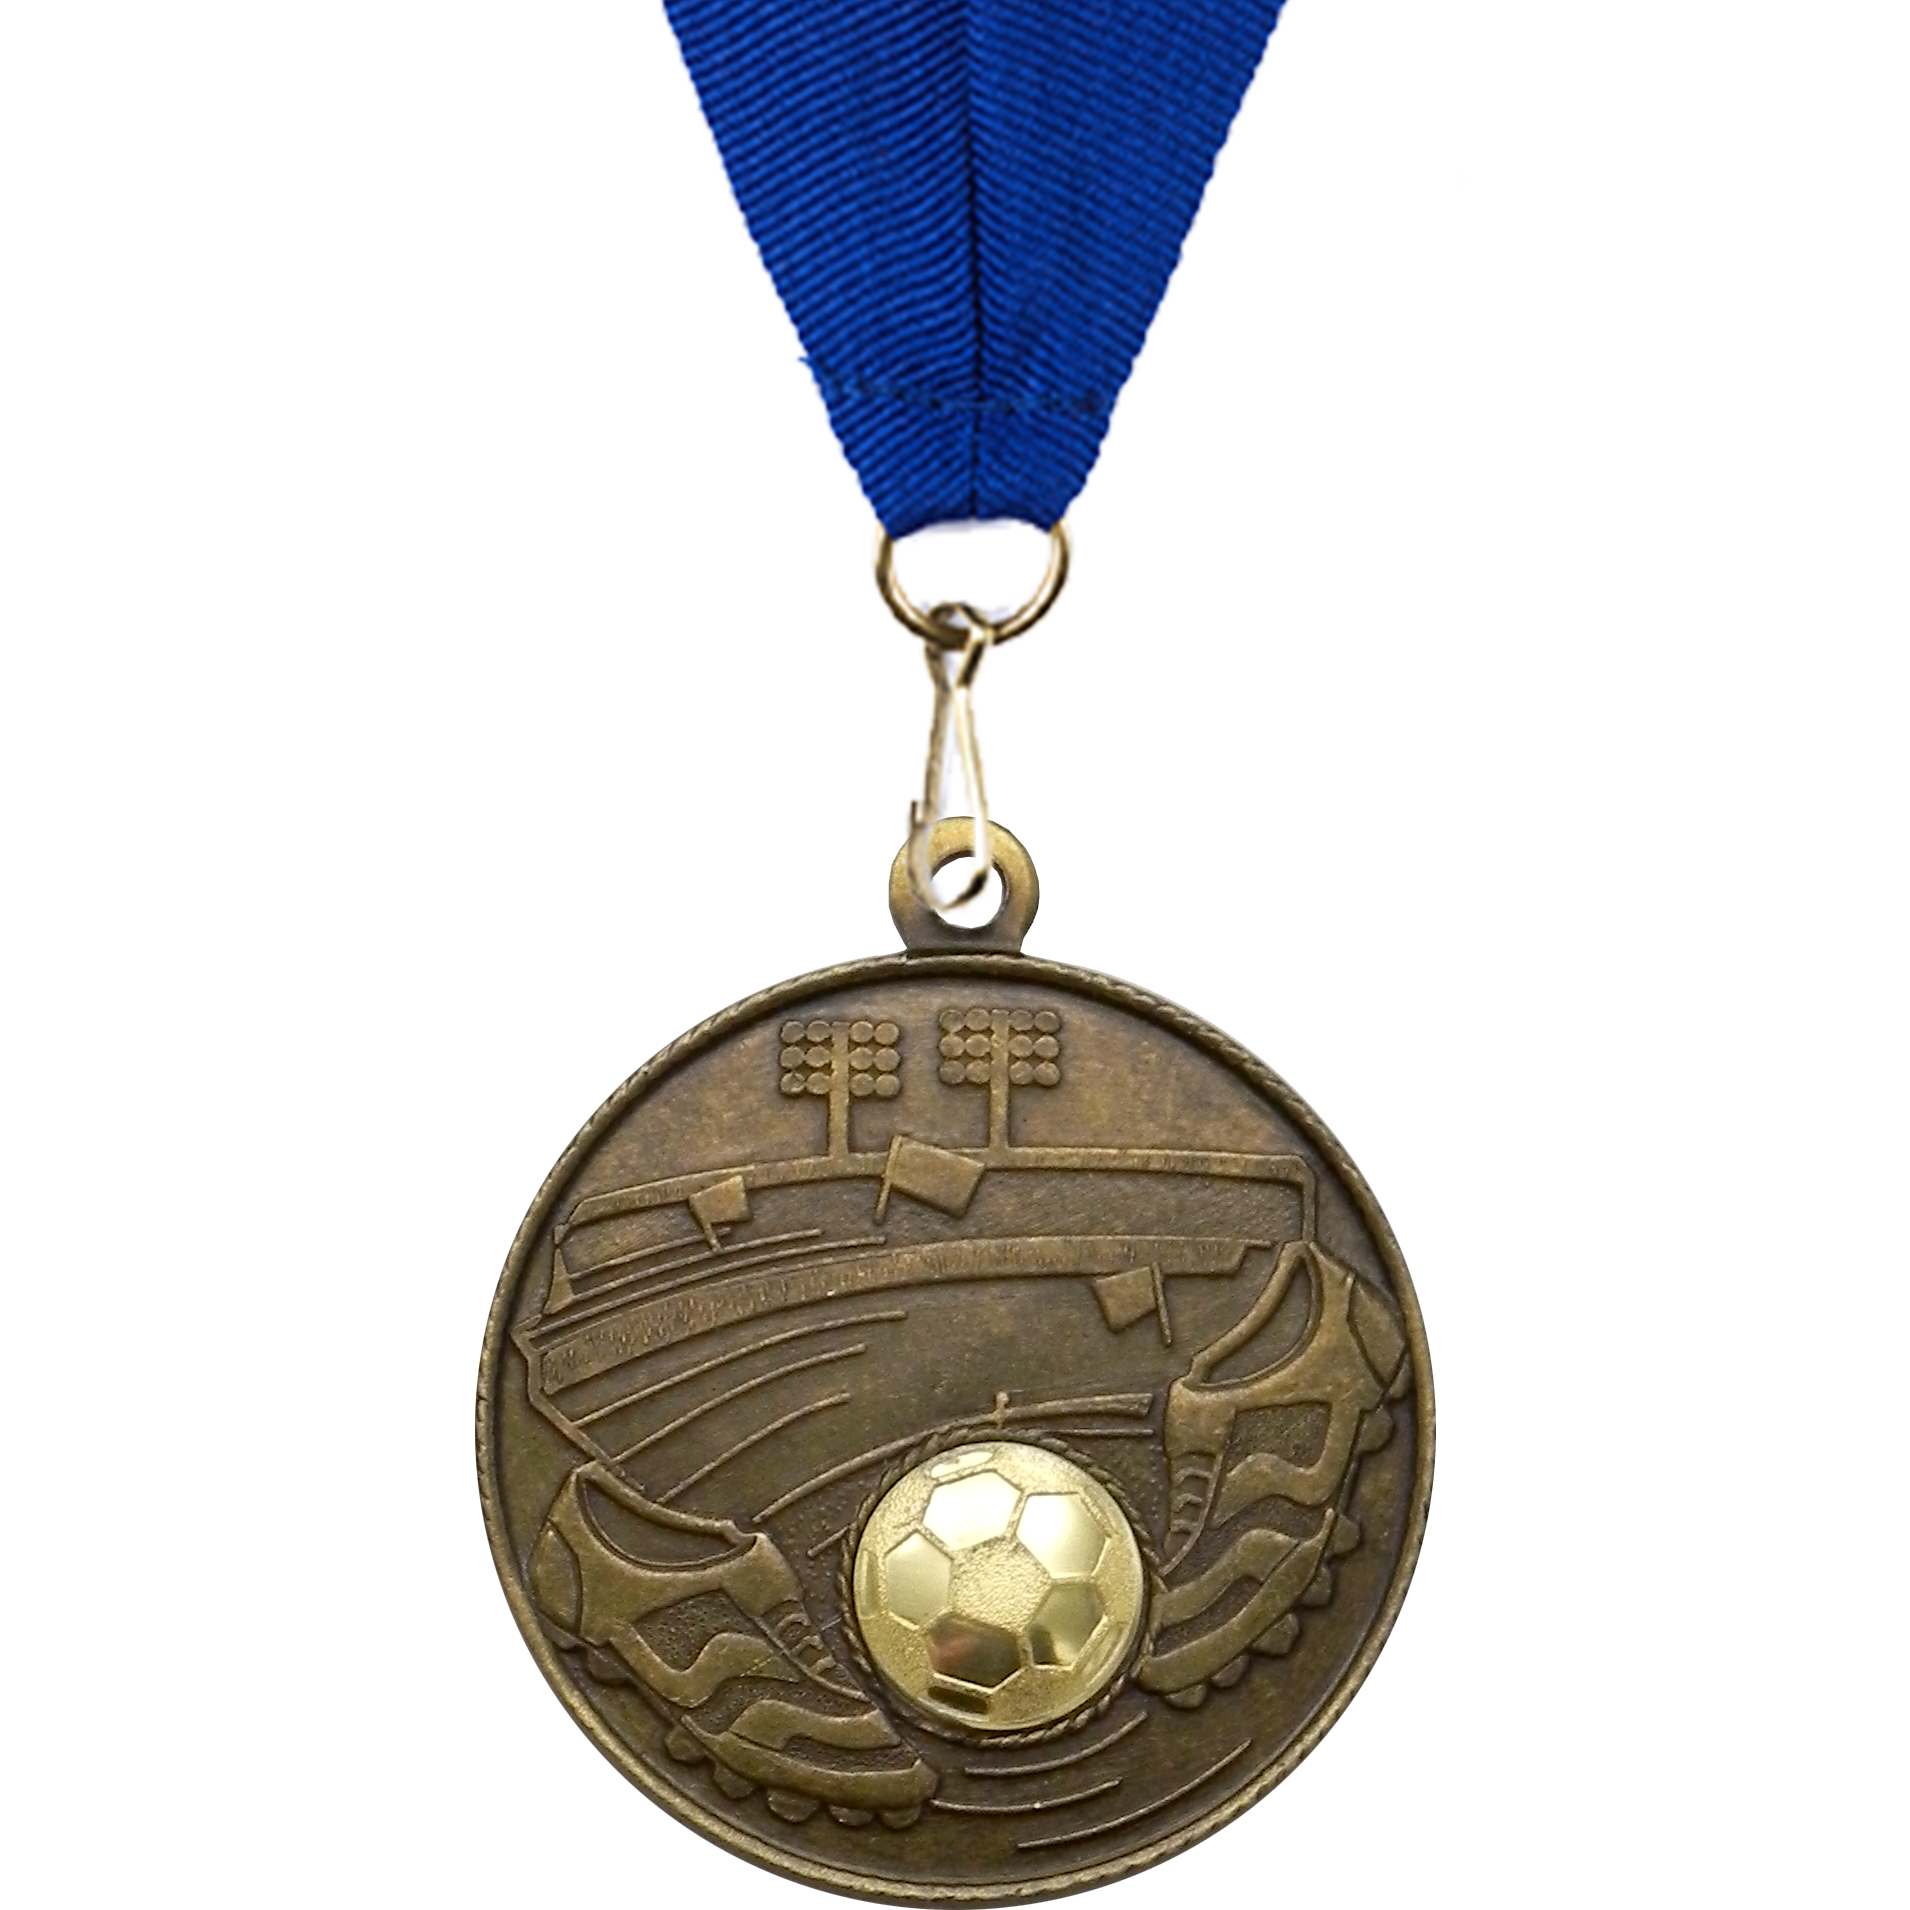 50mm Stadium Football Medal